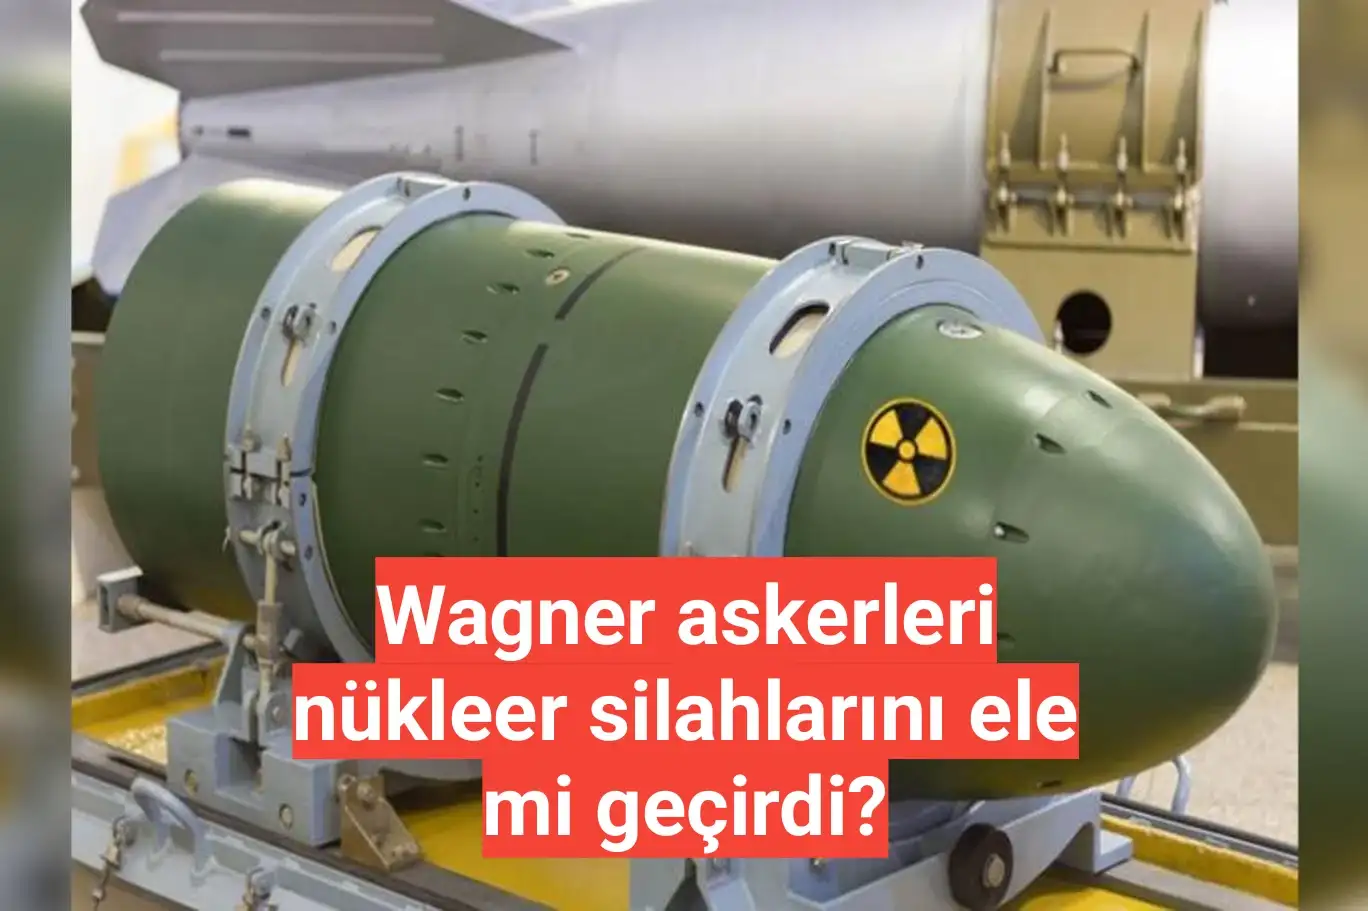 Wagner askerleri nükleer silahlarını ele mi geçirdi?